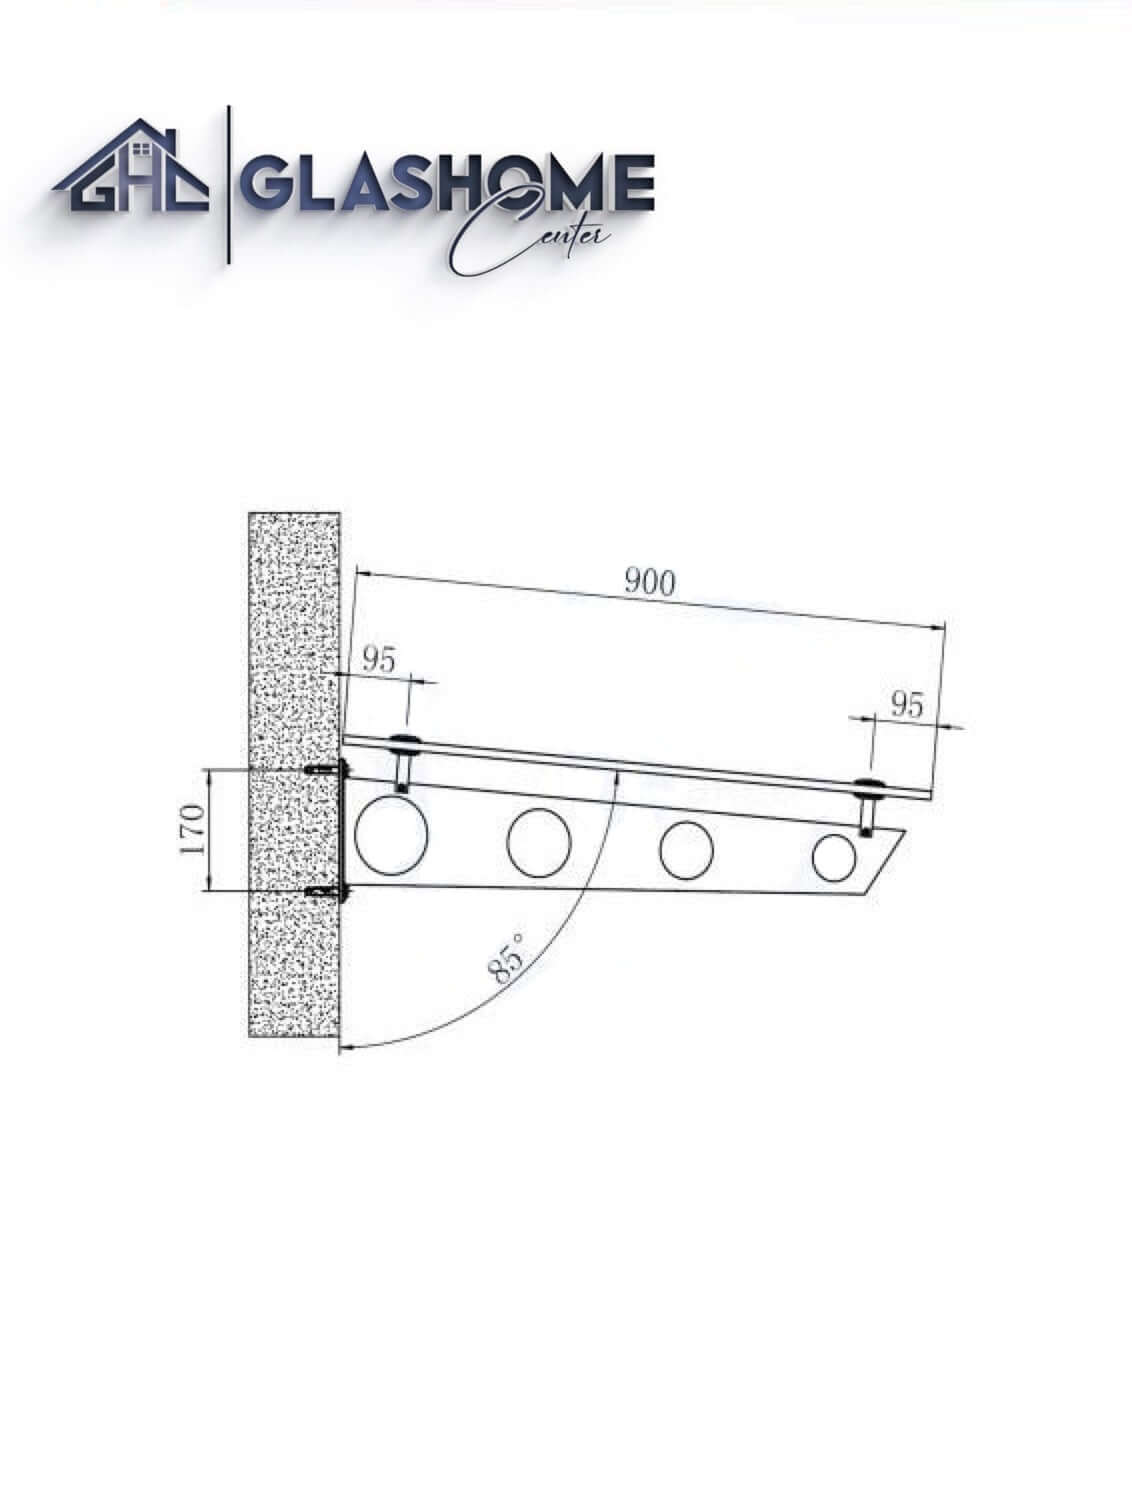 GlasHomeCenter - Glasvordach - Grauglas - 230x90cm - 13,1mm VSG - incl. 3 varianti Edelstahlhalterungen nere "Stoccolma"